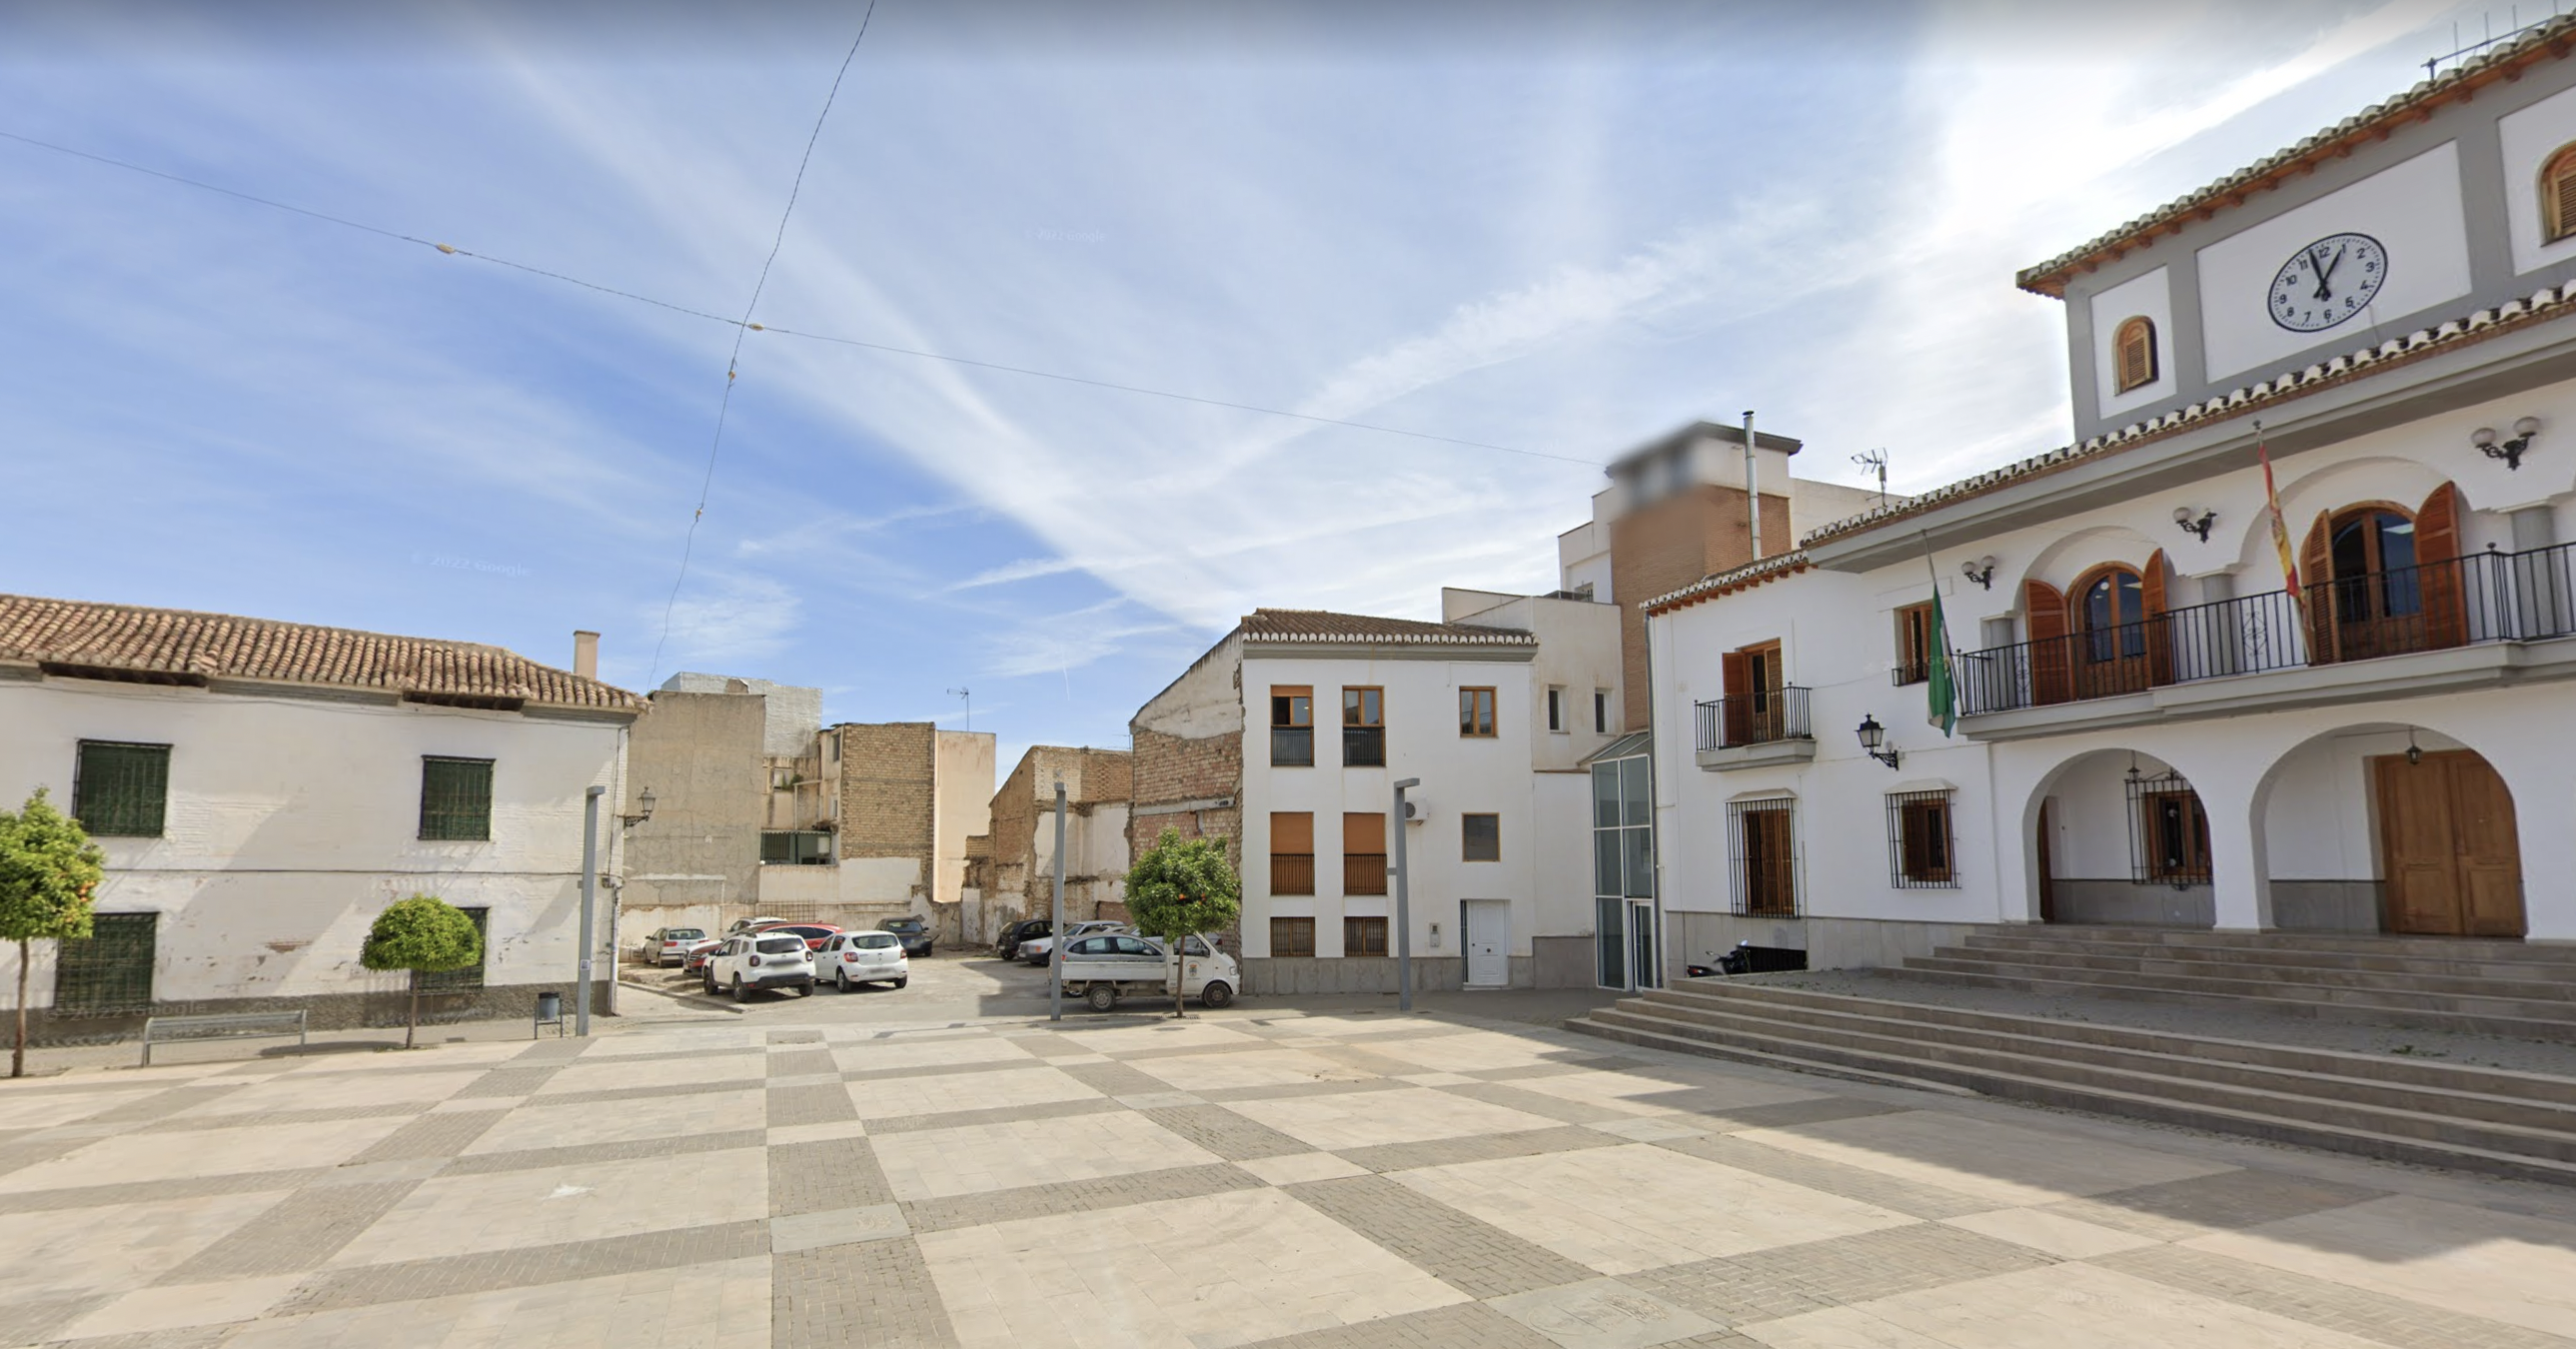 La plaza de España de Las Gabias, en Granada, donde se ha encontrado un artefacto explosivo.